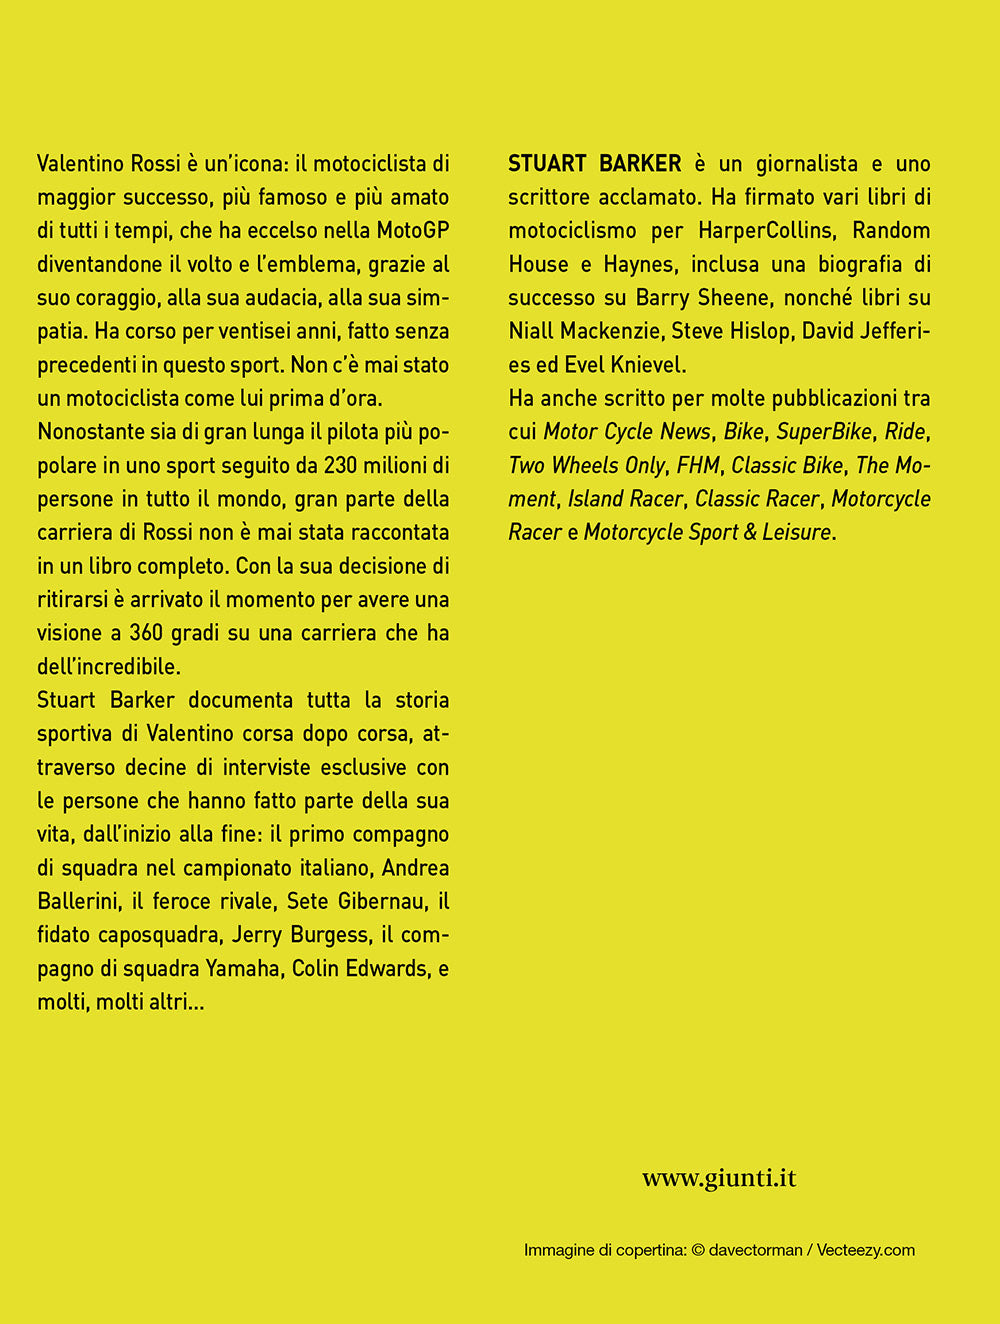 Valentino Rossi::La biografia